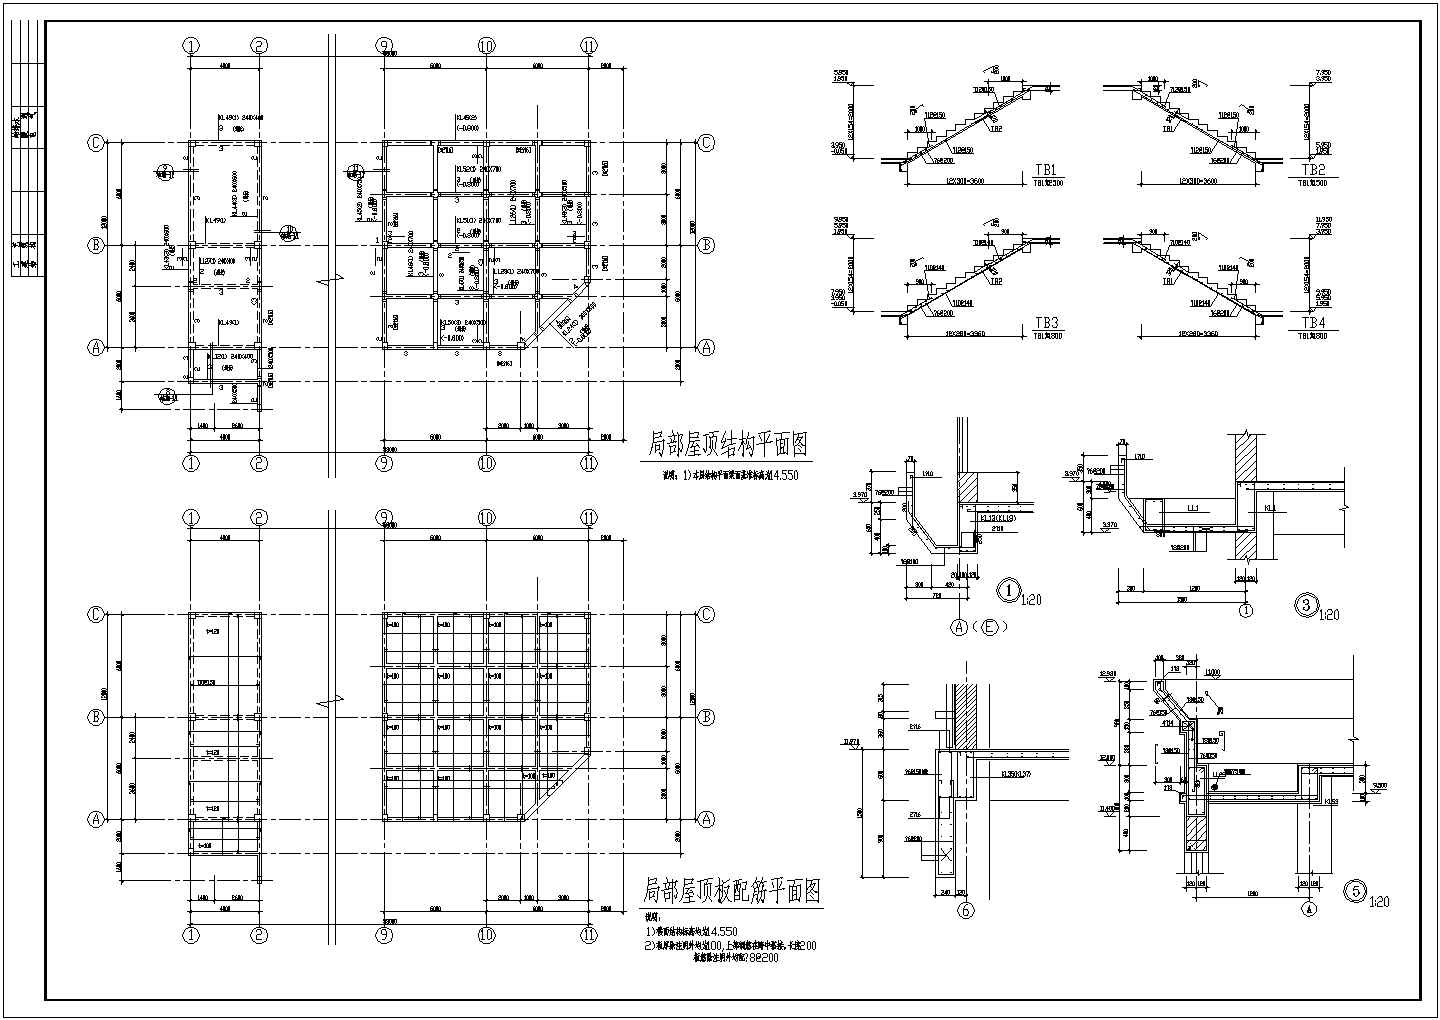 【3层】2677.9平米三层框架办公楼工程量计算及施工组织（含建筑结构施工图、平面图、进度图、网络图）